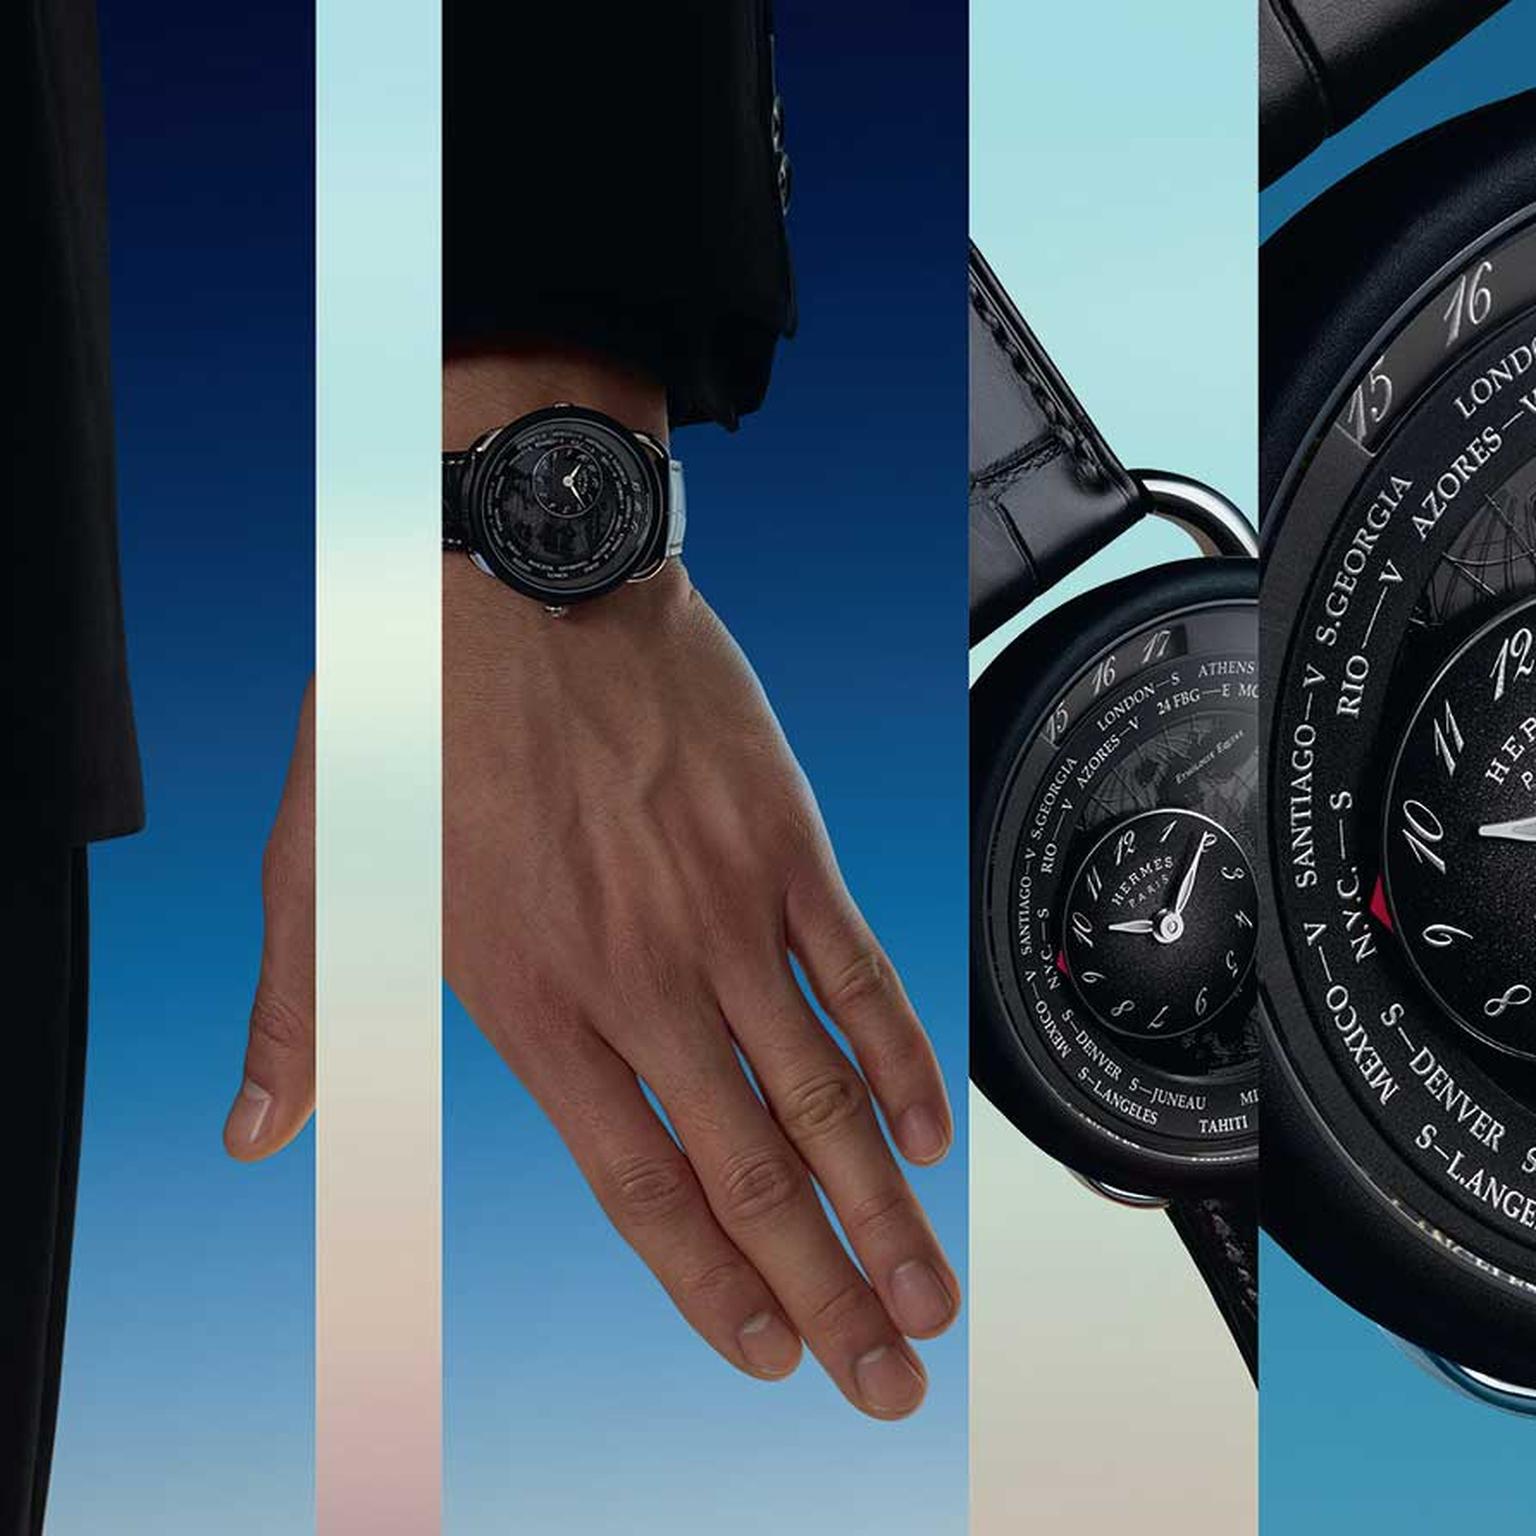 Hermès Arceau Le temps voyageur men’s watch on model